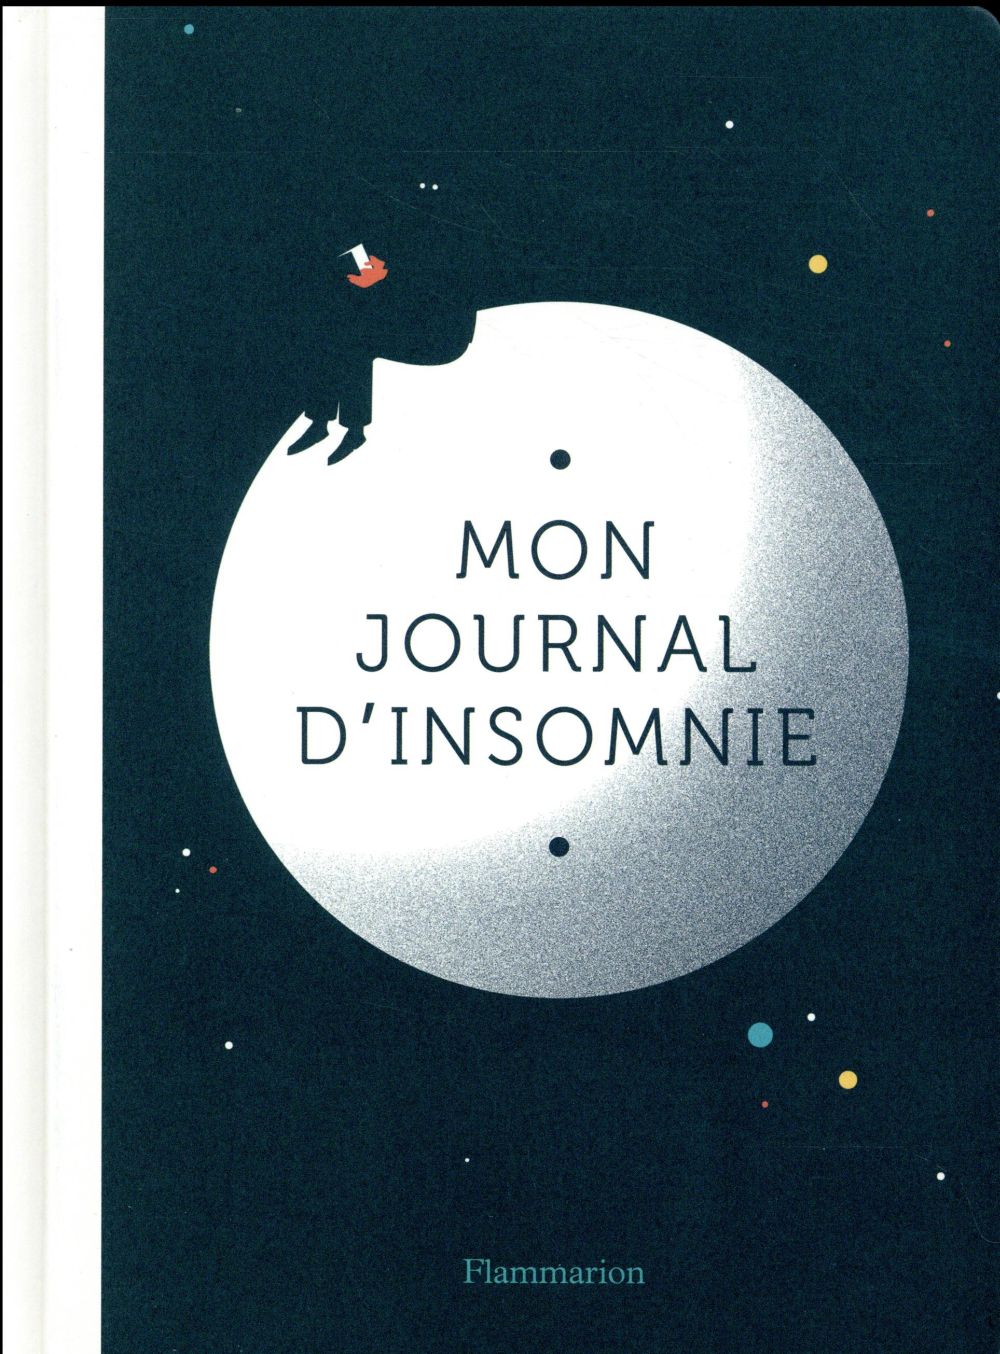 MON JOURNAL D'INSOMNIE